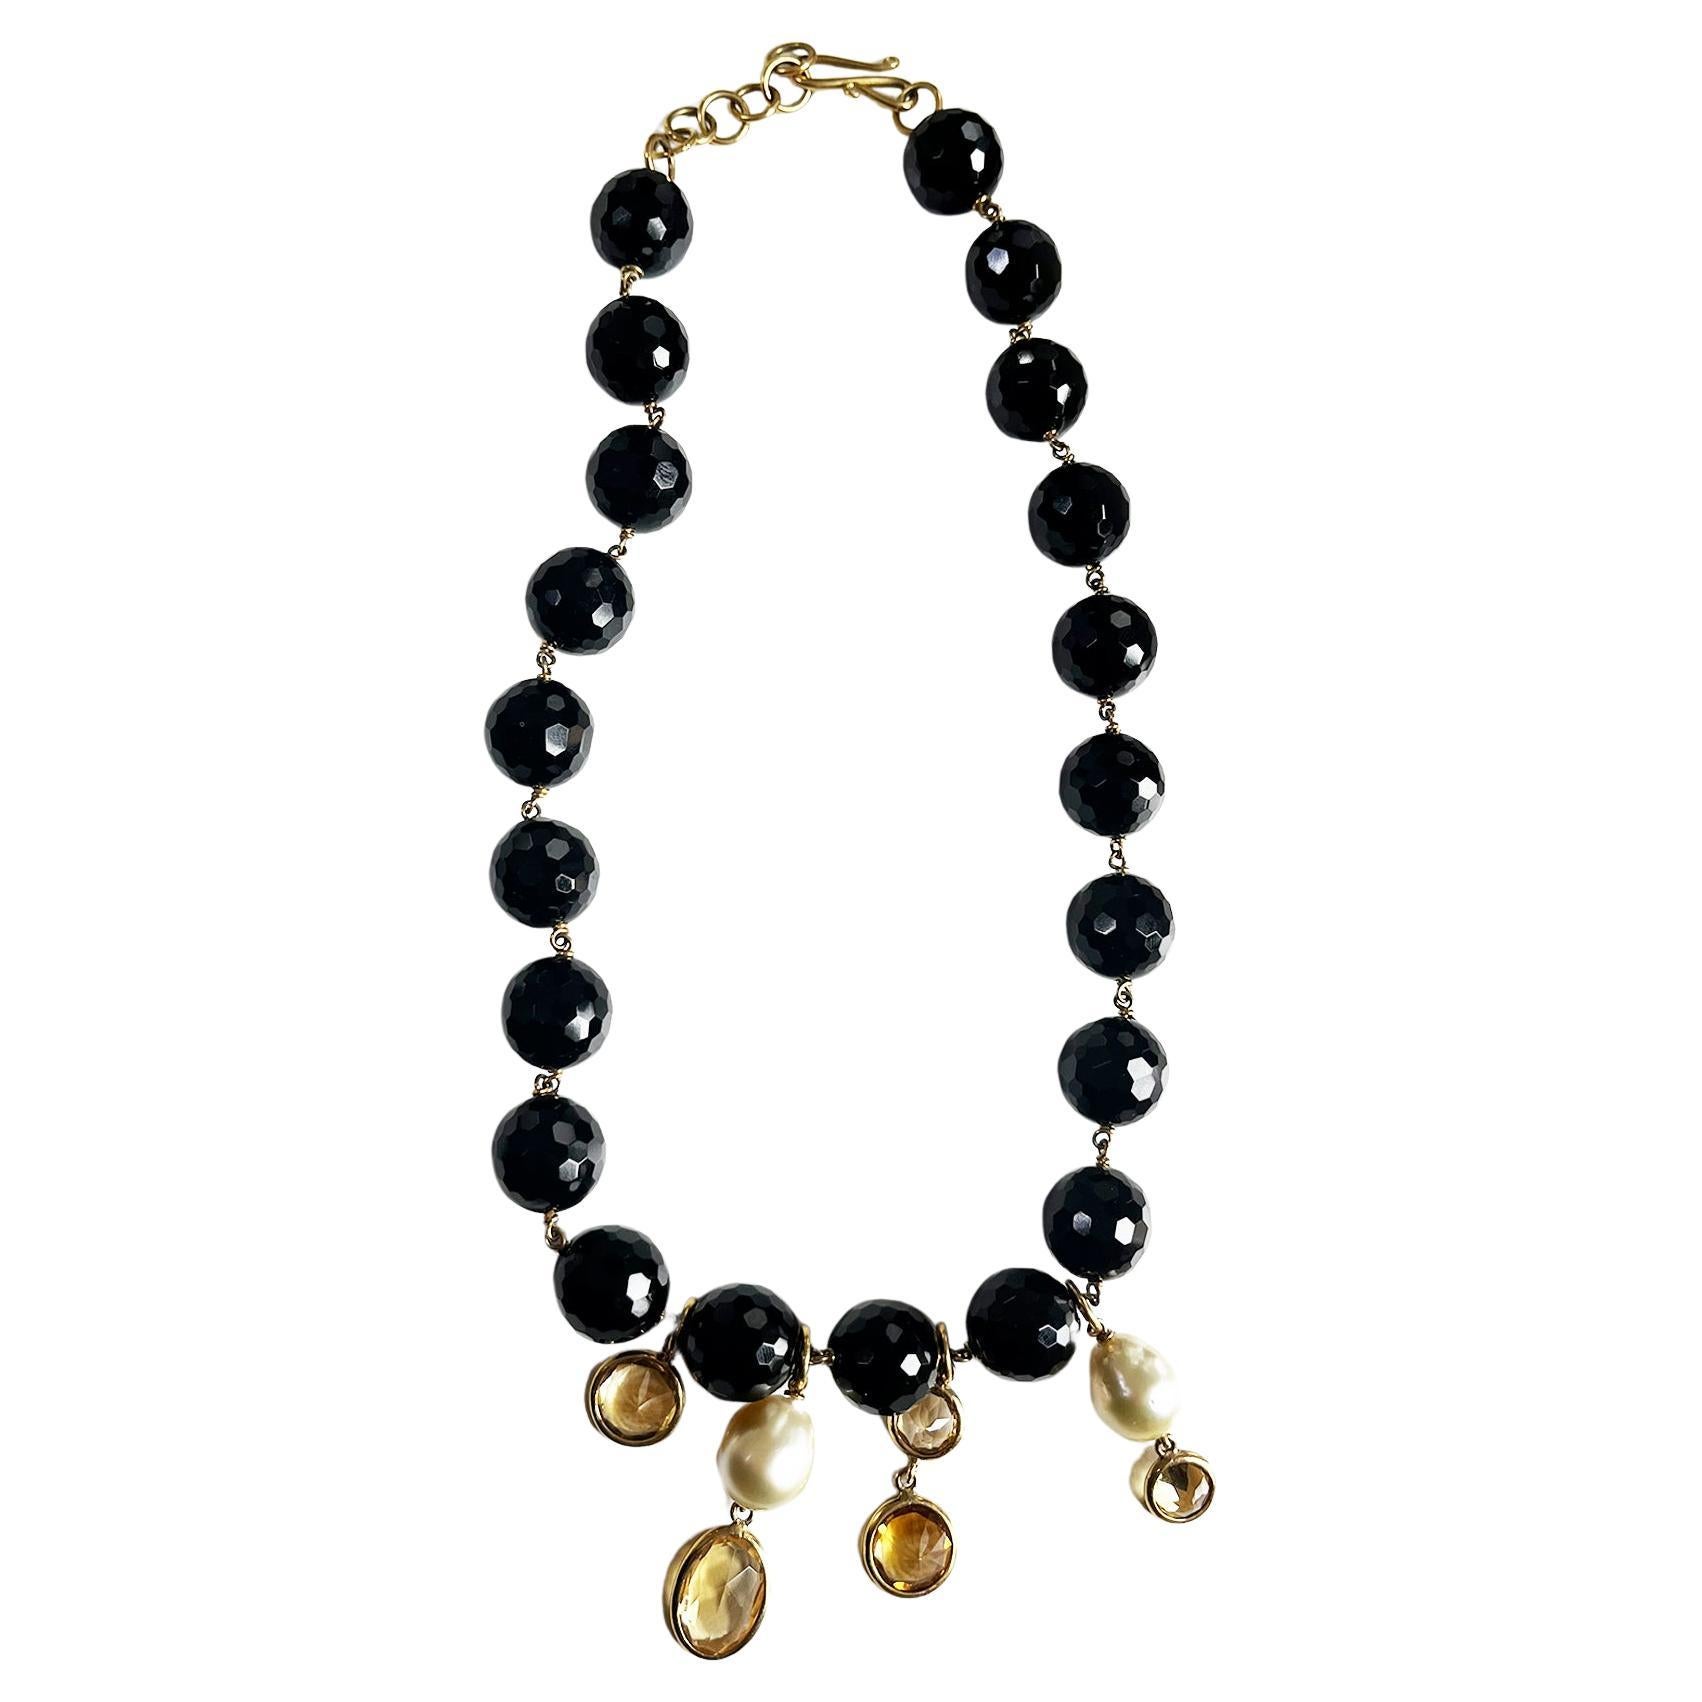 18KT Halskette aus Roségold mit Perlen, Perlen und Citrinquarzen aus Onyx